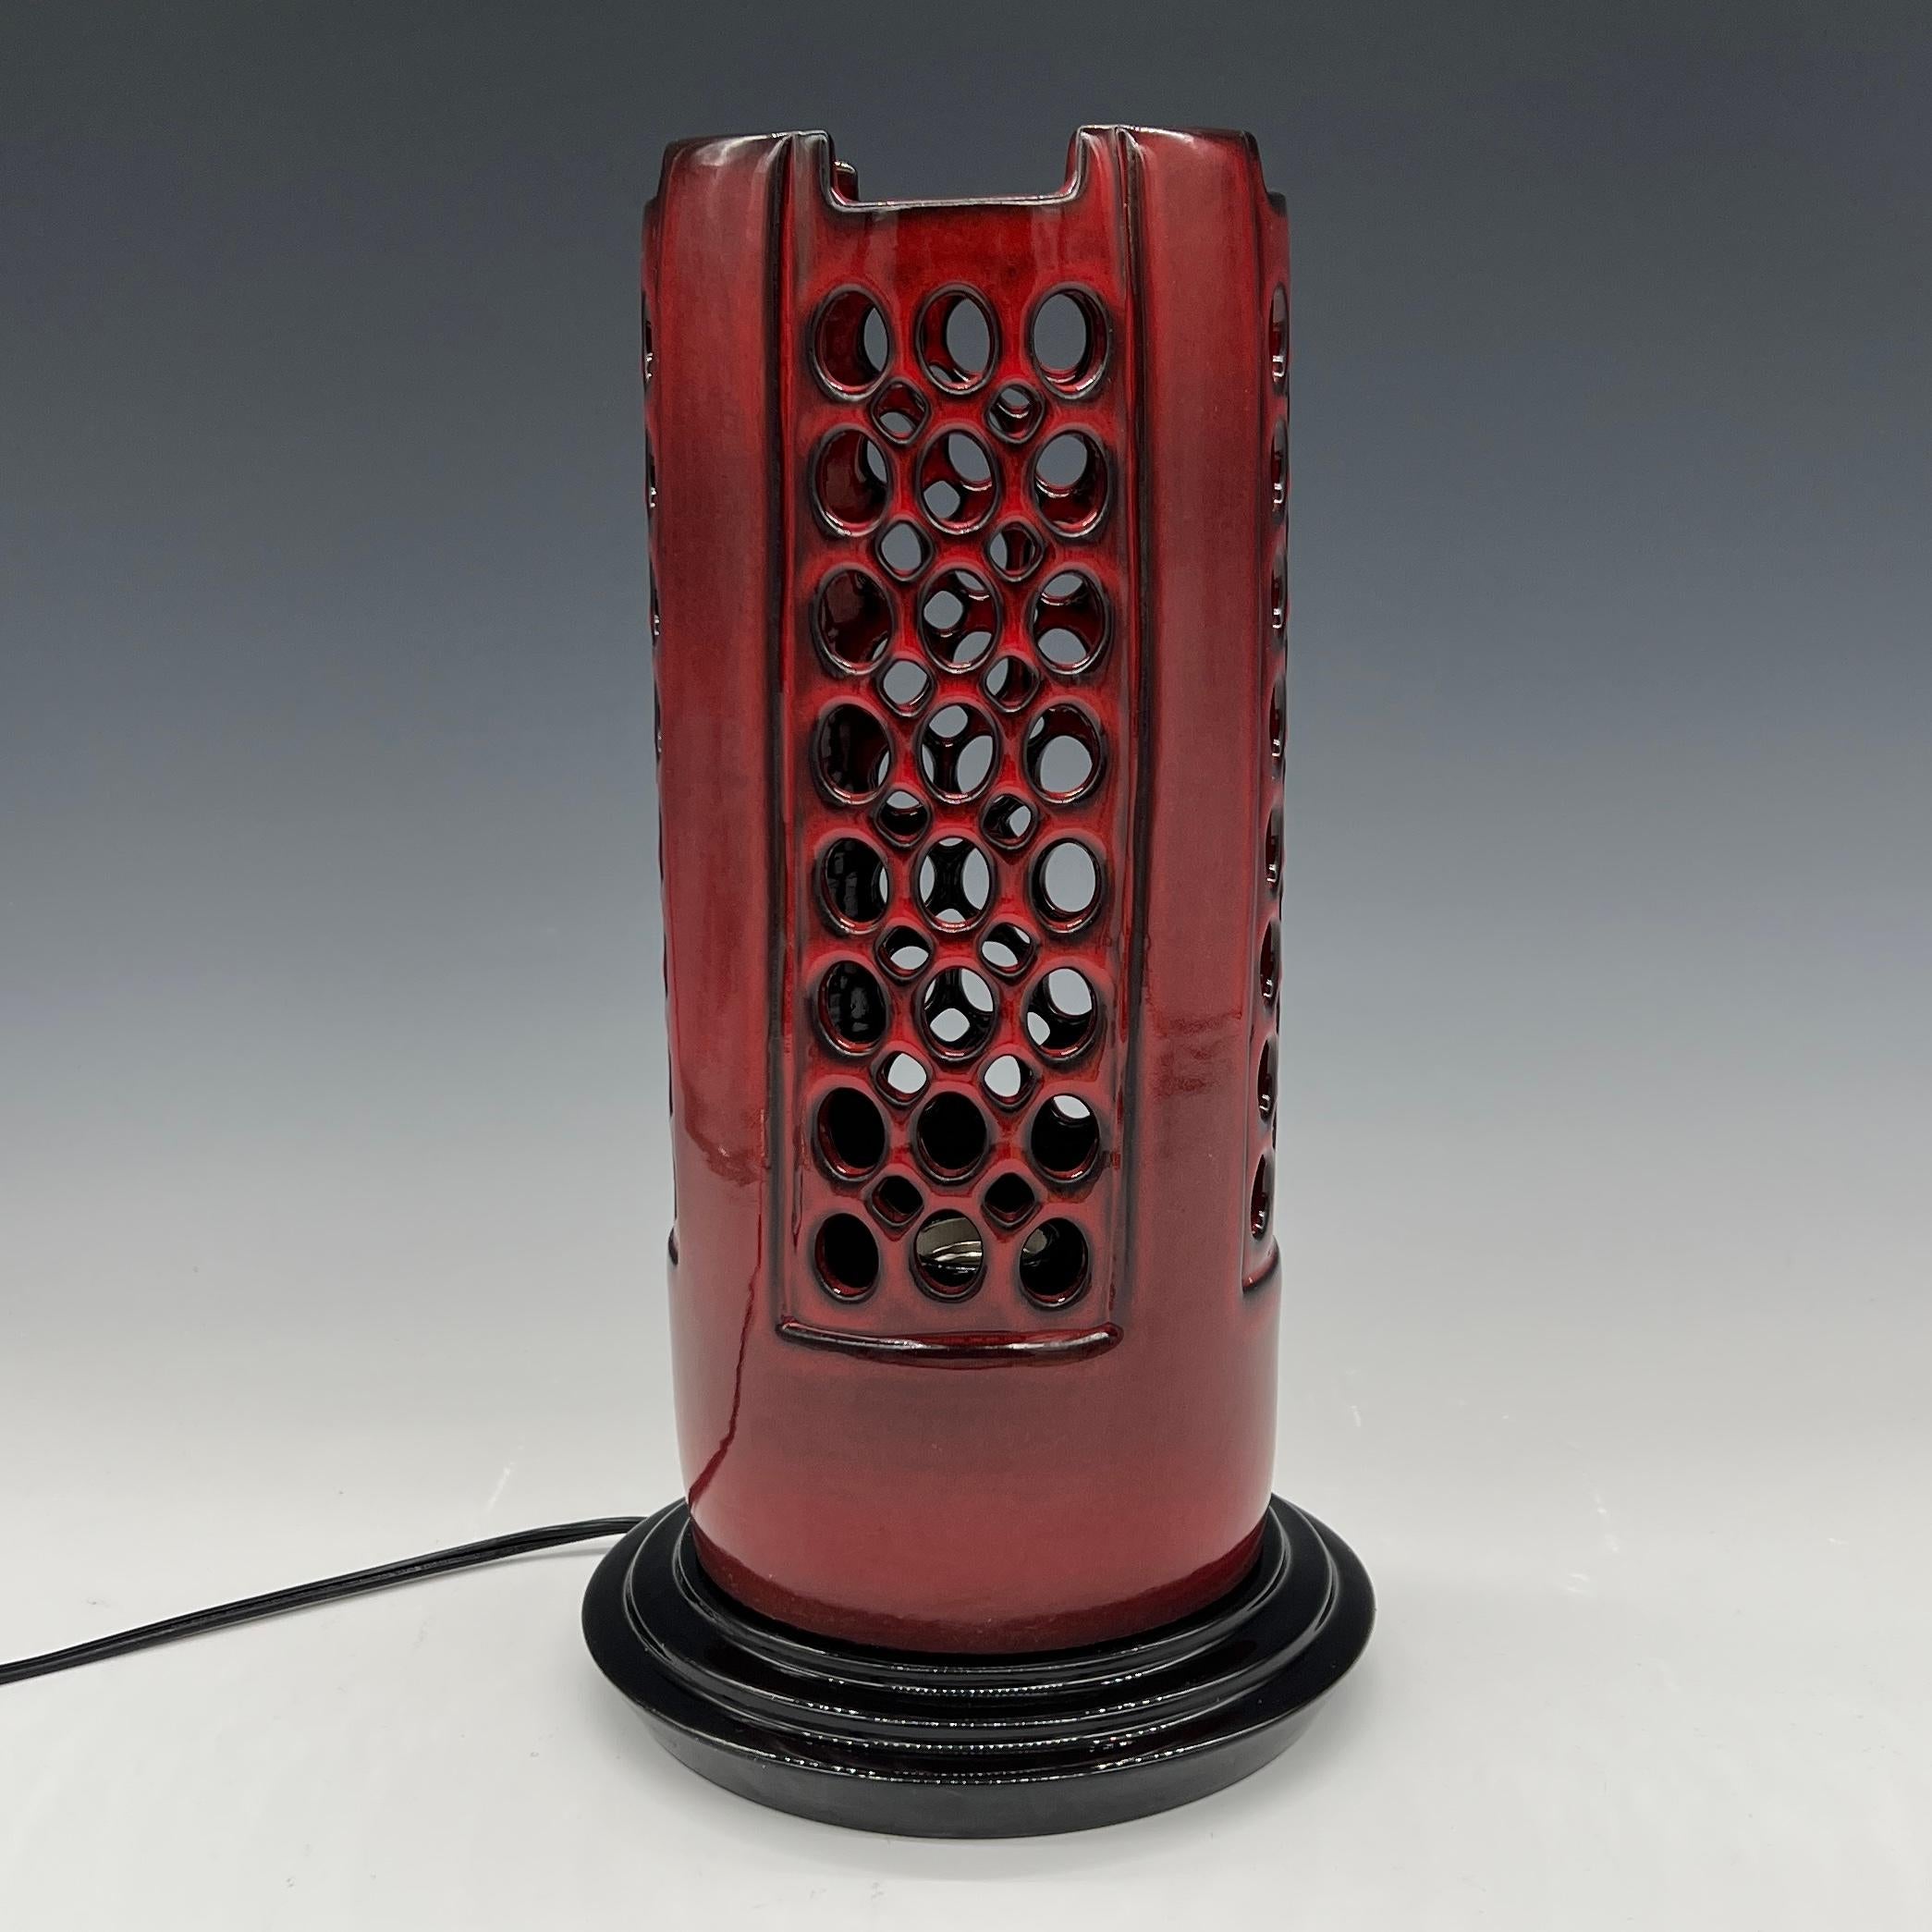 Cette lampe est tournée et percée à la main d'une glaçure rouge vibrante et brillante qui devient noire sur le bord et les arêtes.
La base est en céramique tournée avec une glaçure noire vitreuse
Cordon et interrupteur noirs.
Peut être utilisé avec